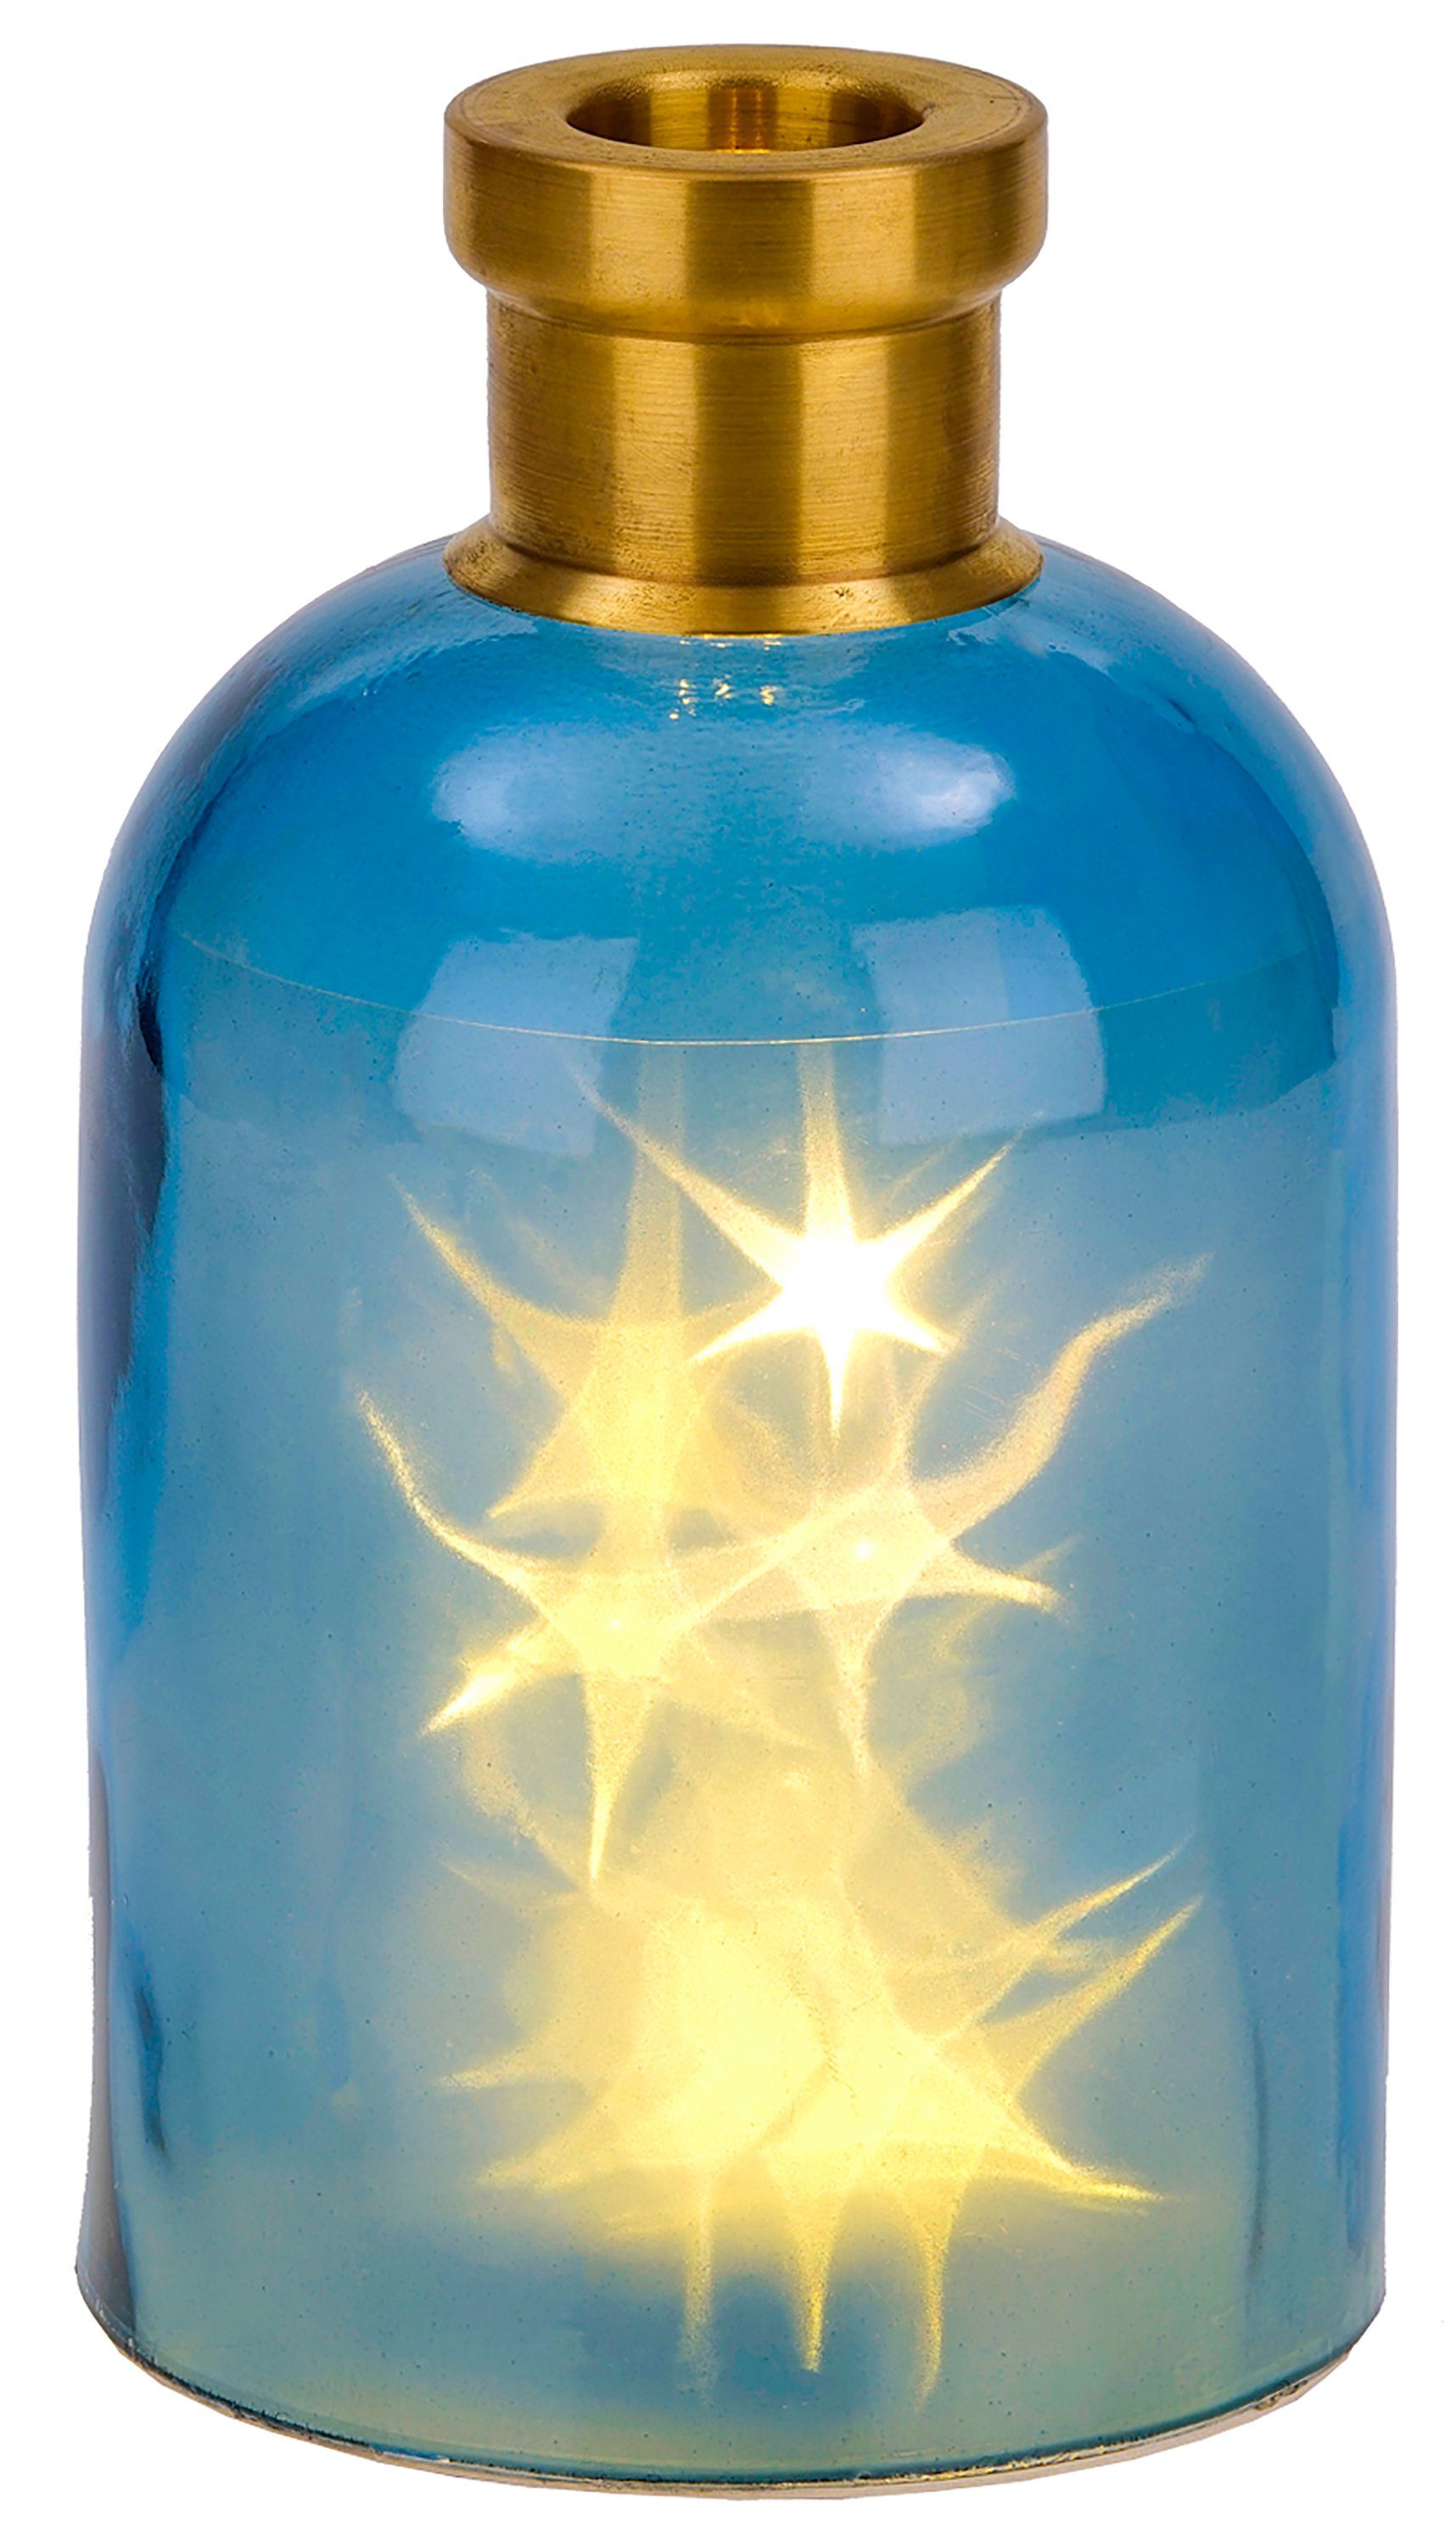 BRUBAKER LED Dekolicht Lichterflasche "Magie" mit 10 LED Sternen, LED Lichterkette, Warmweiß, Dekoleuchte, Party Licht Deko, Höhe 24 cm